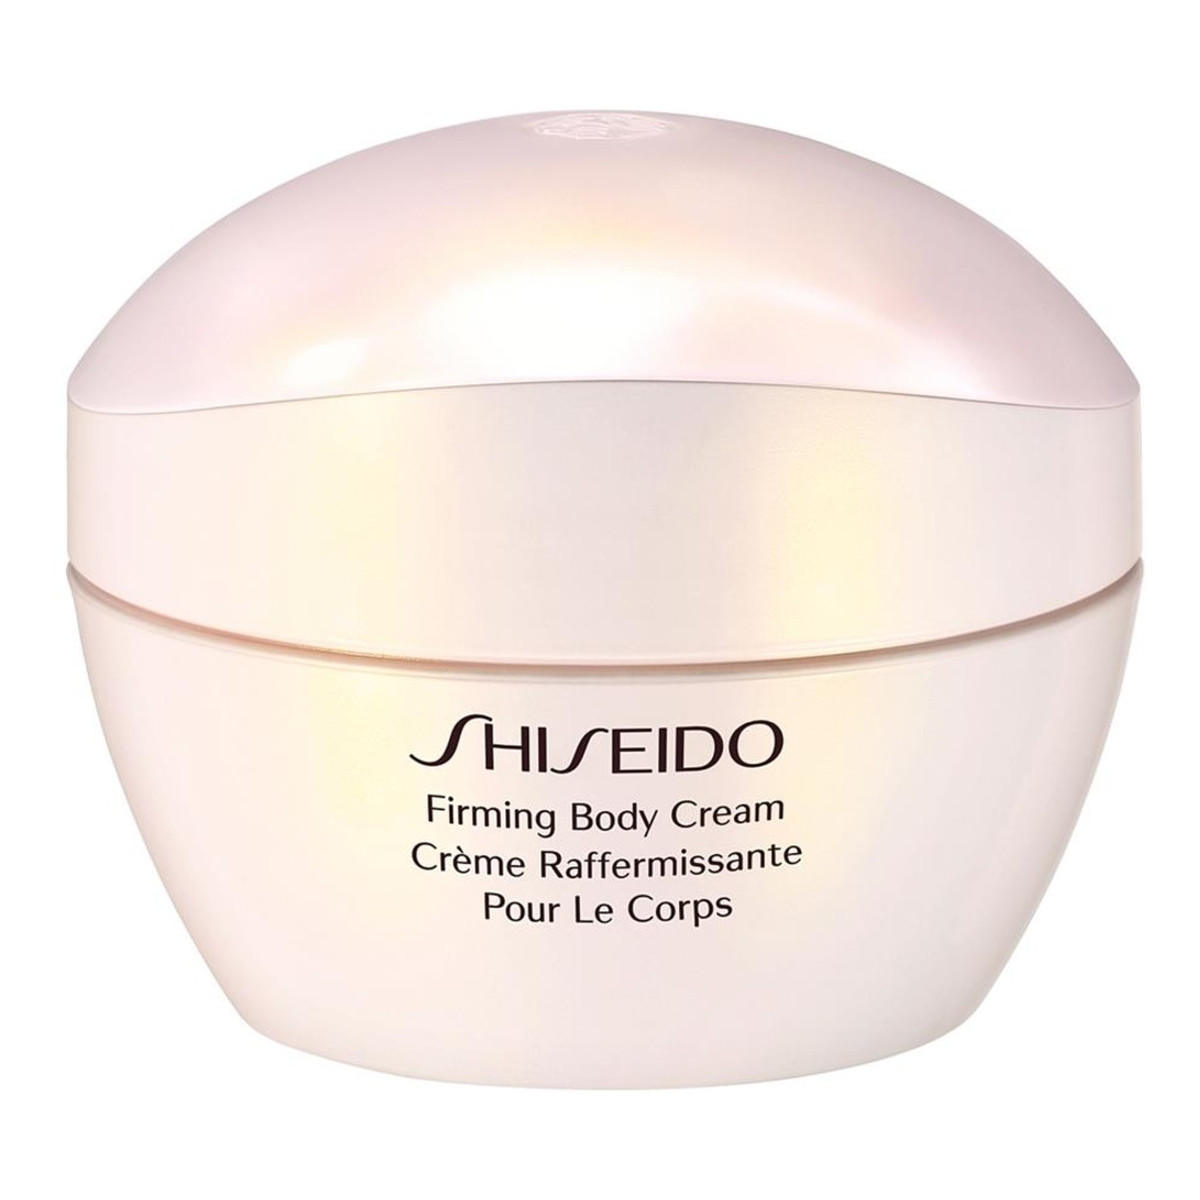 Shiseido Firming Body Cream ujędrniający Krem do ciała 200ml